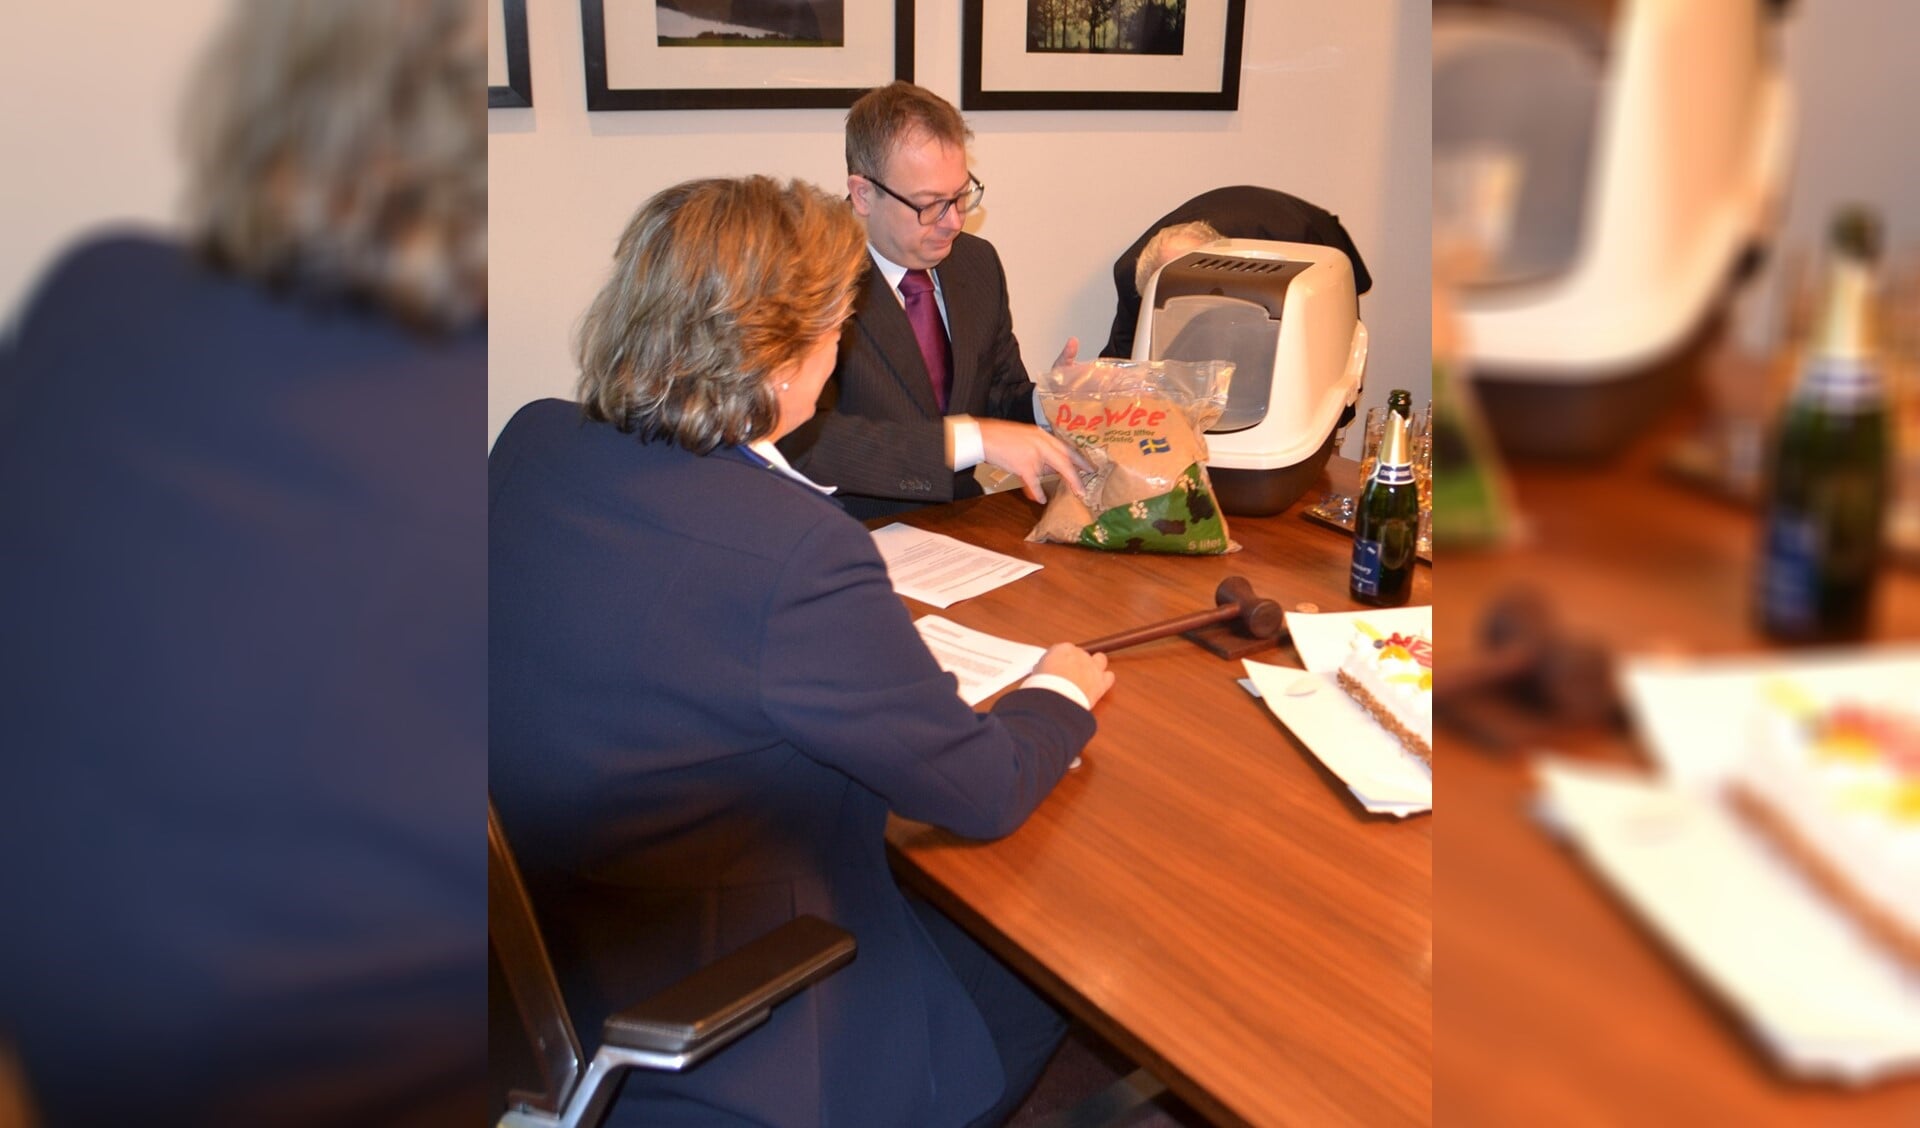 Burgemeester Roland van Benthem en Reijnterprise BV tekenen de verkoopovereenkomst.